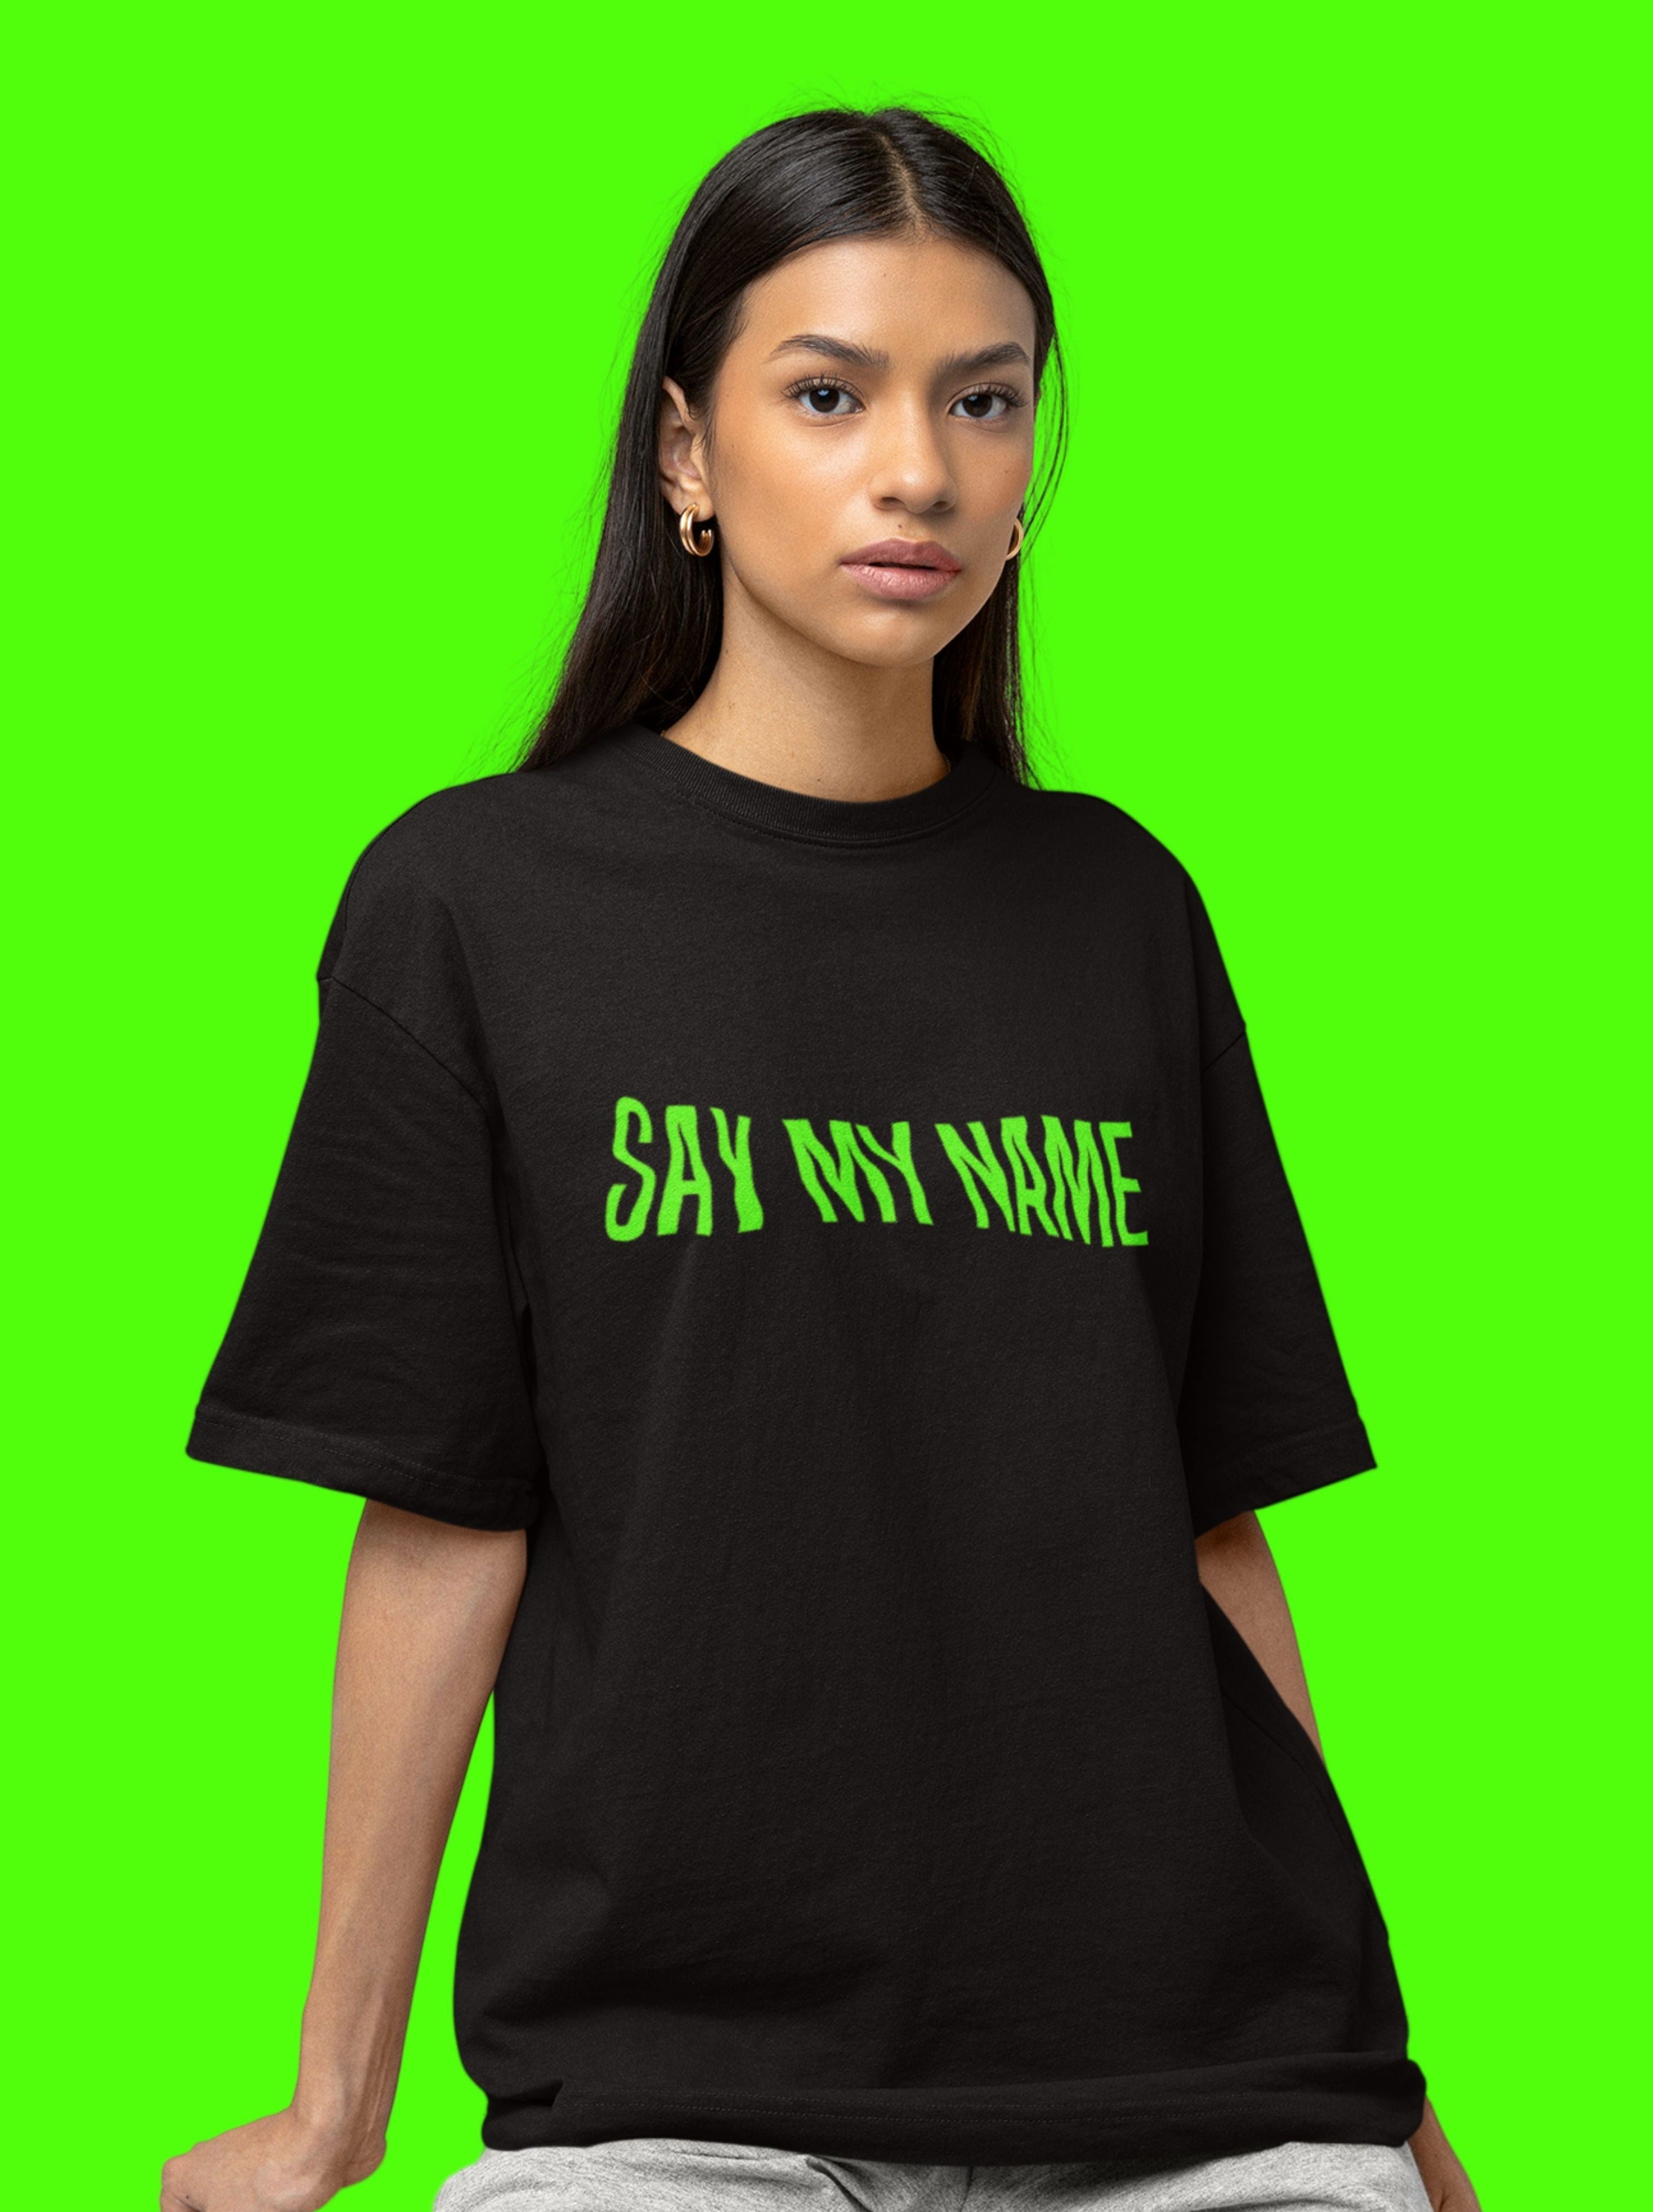 Notre collection de t-shirts glow in the dark femme Say My Name est le choix parfait pour toutes les femmes qui aiment se démarquer avec style. 